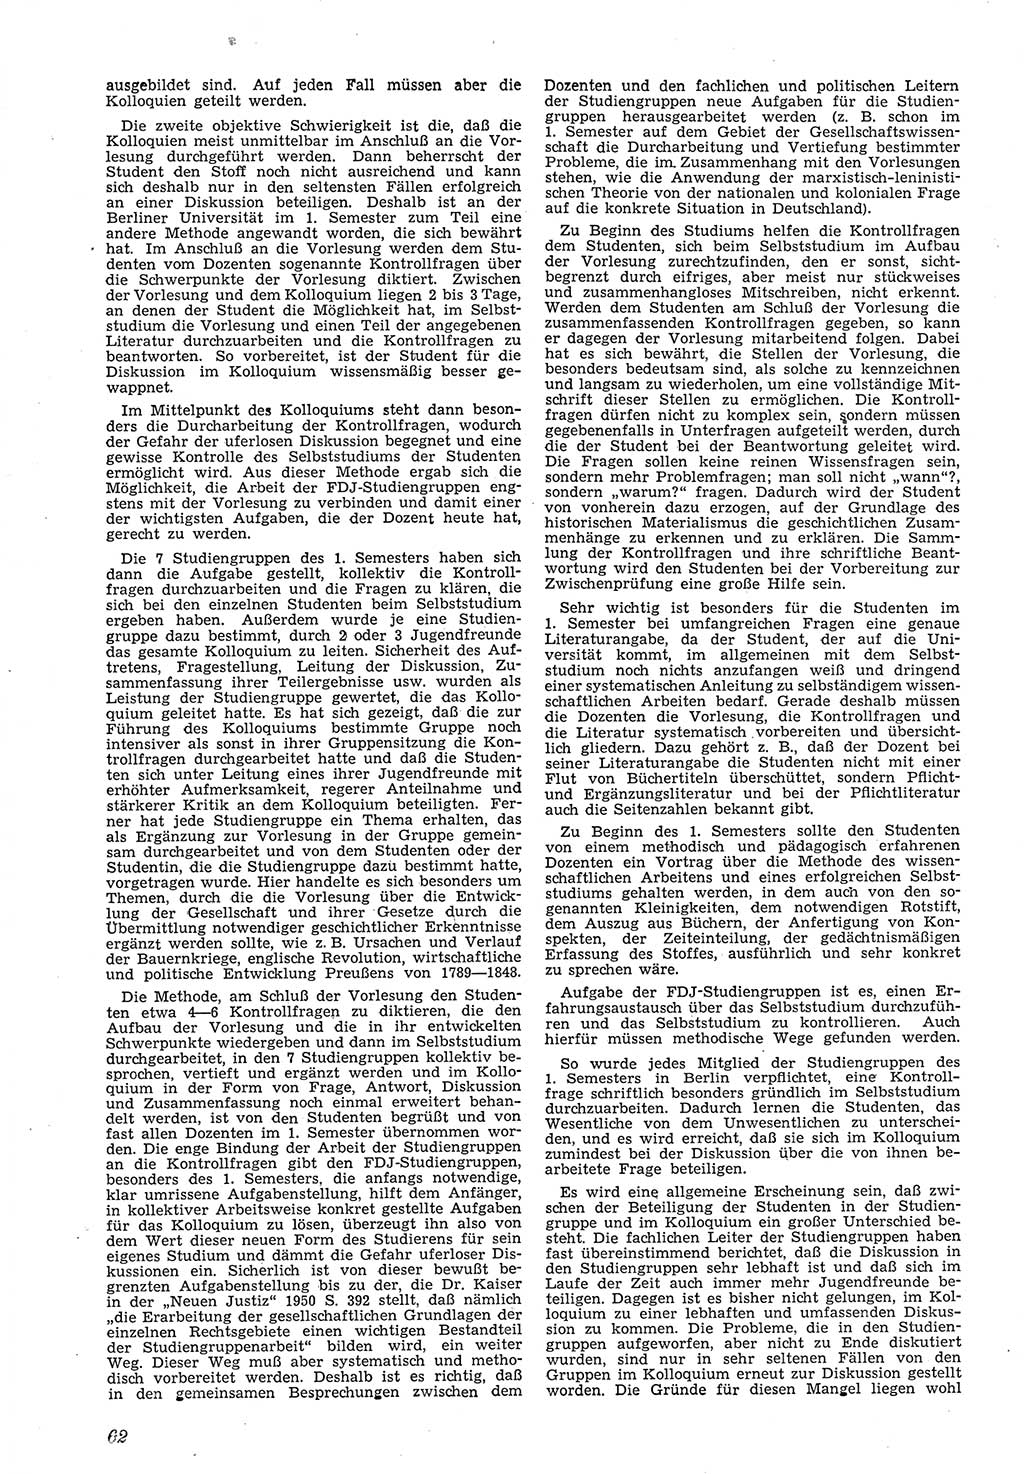 Neue Justiz (NJ), Zeitschrift für Recht und Rechtswissenschaft [Deutsche Demokratische Republik (DDR)], 5. Jahrgang 1951, Seite 62 (NJ DDR 1951, S. 62)